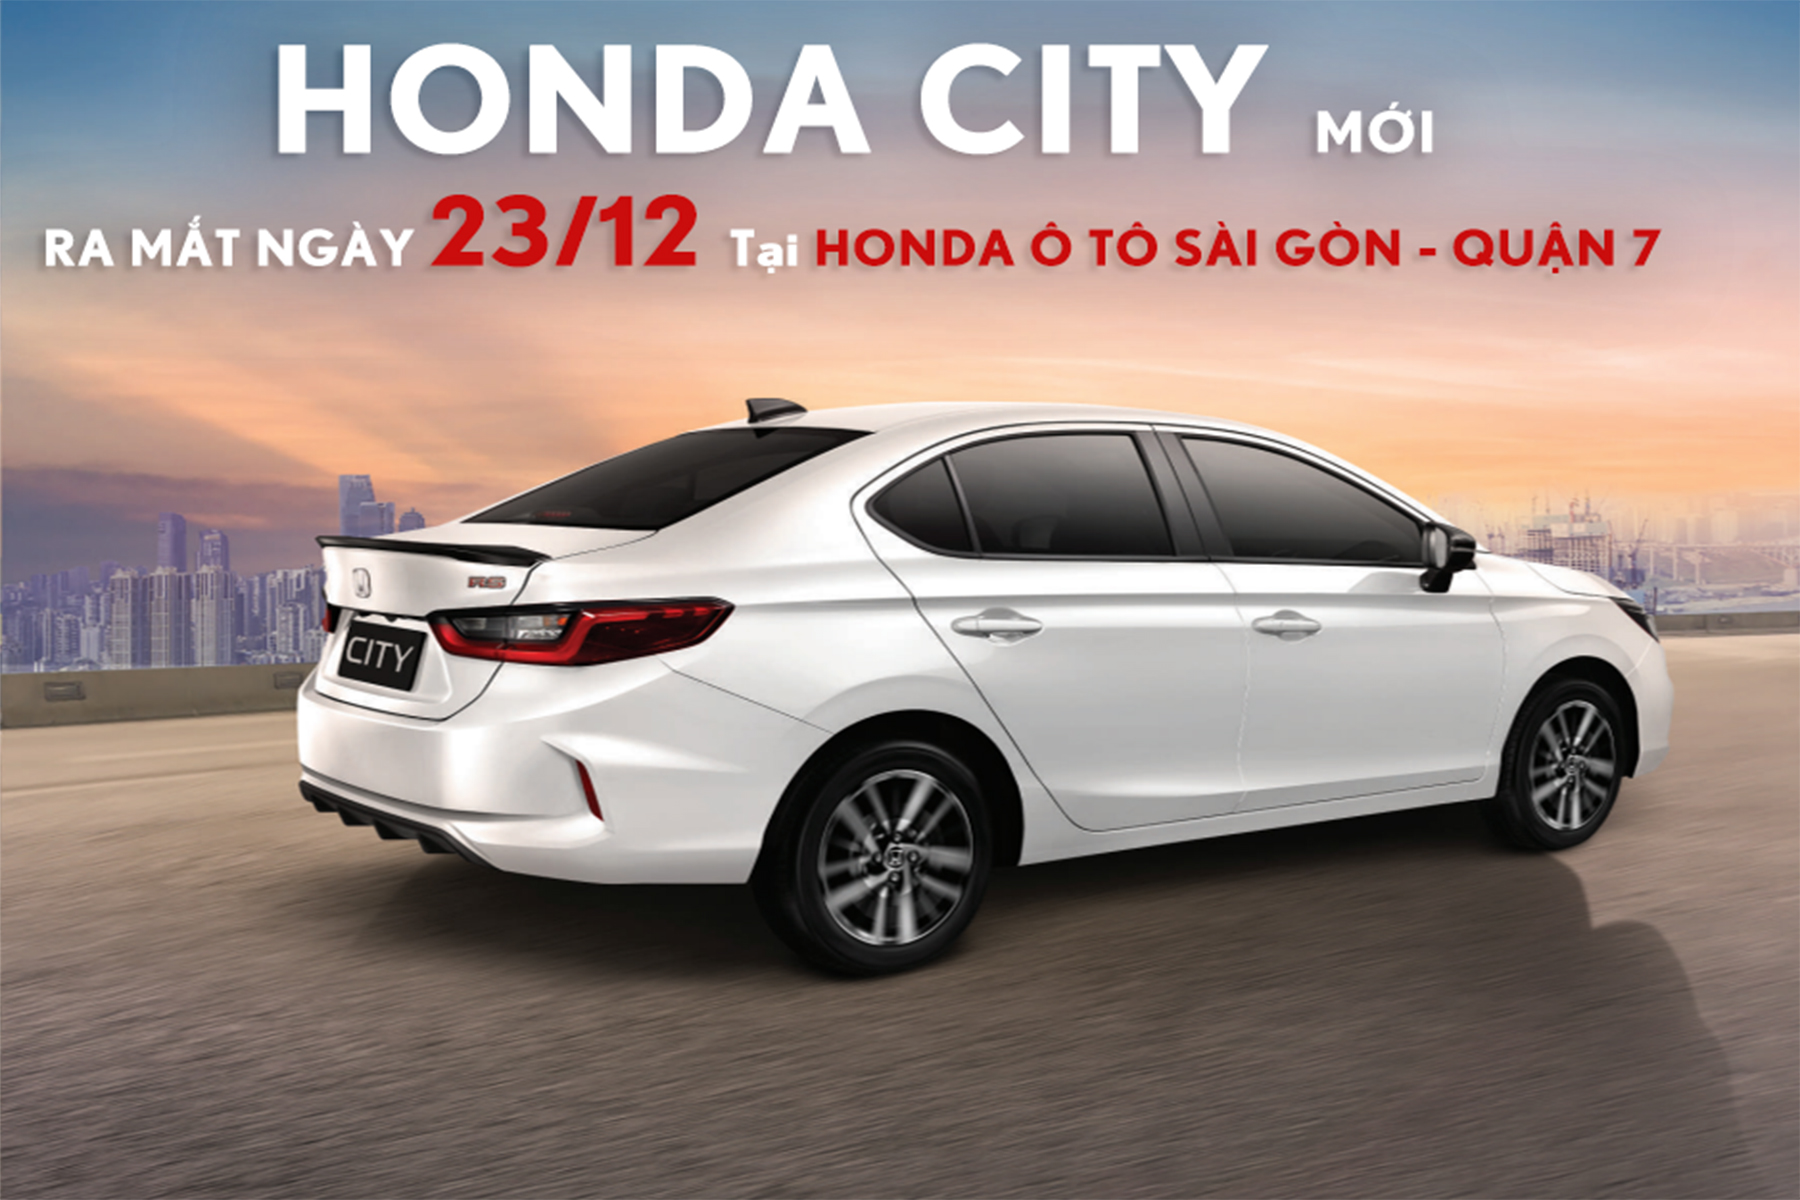 Honda City 2021 ra mắt tại Honda Ôtô Quận 7 ngày 23/12